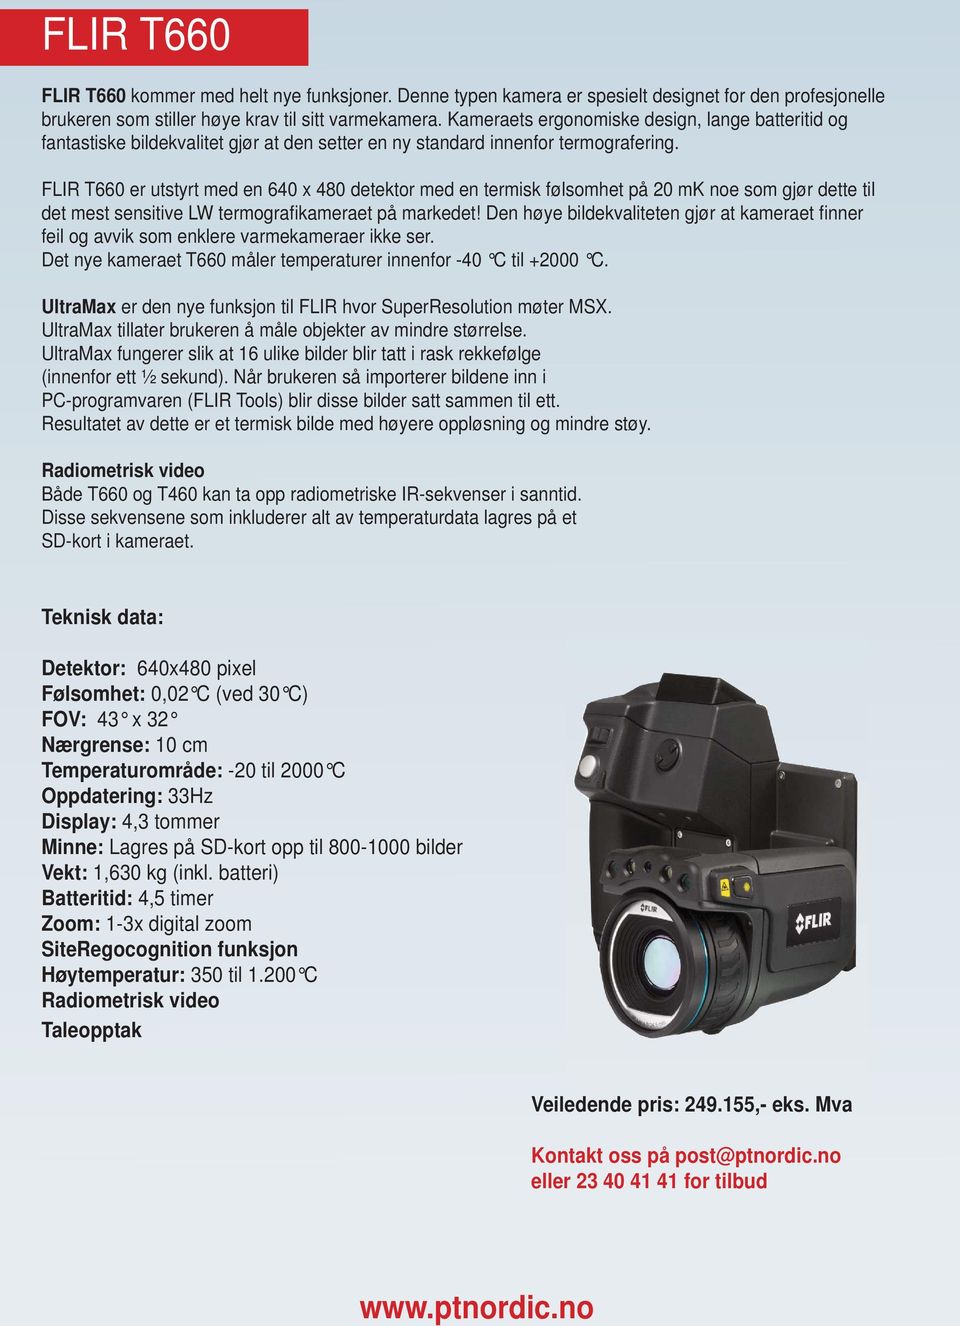 FLIR T660 er utstyrt med en 640 x 480 detektor med en termisk følsomhet på 20 mk noe som gjør dette til det mest sensitive LW termografi kameraet på markedet!